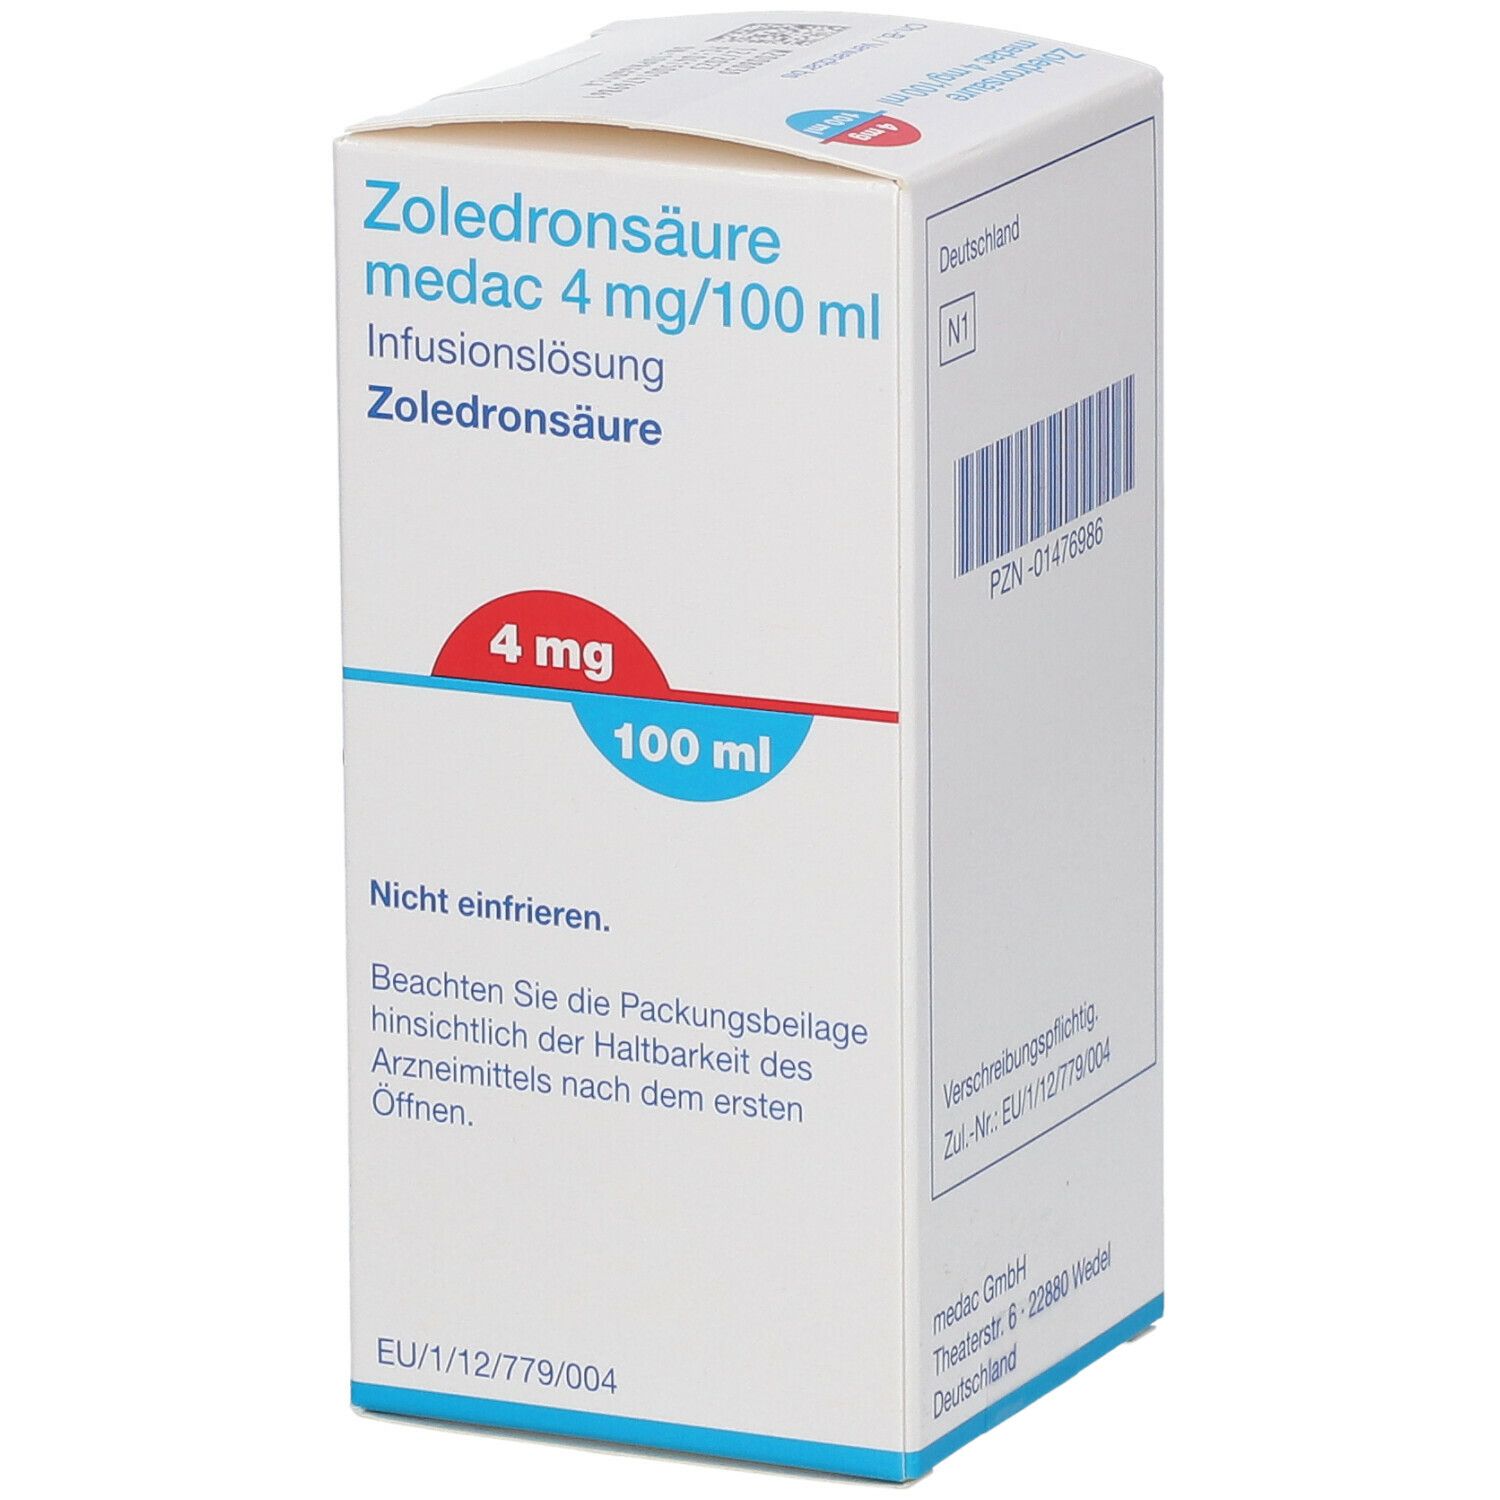 Zoledronsäure medac 4 mg/100 ml